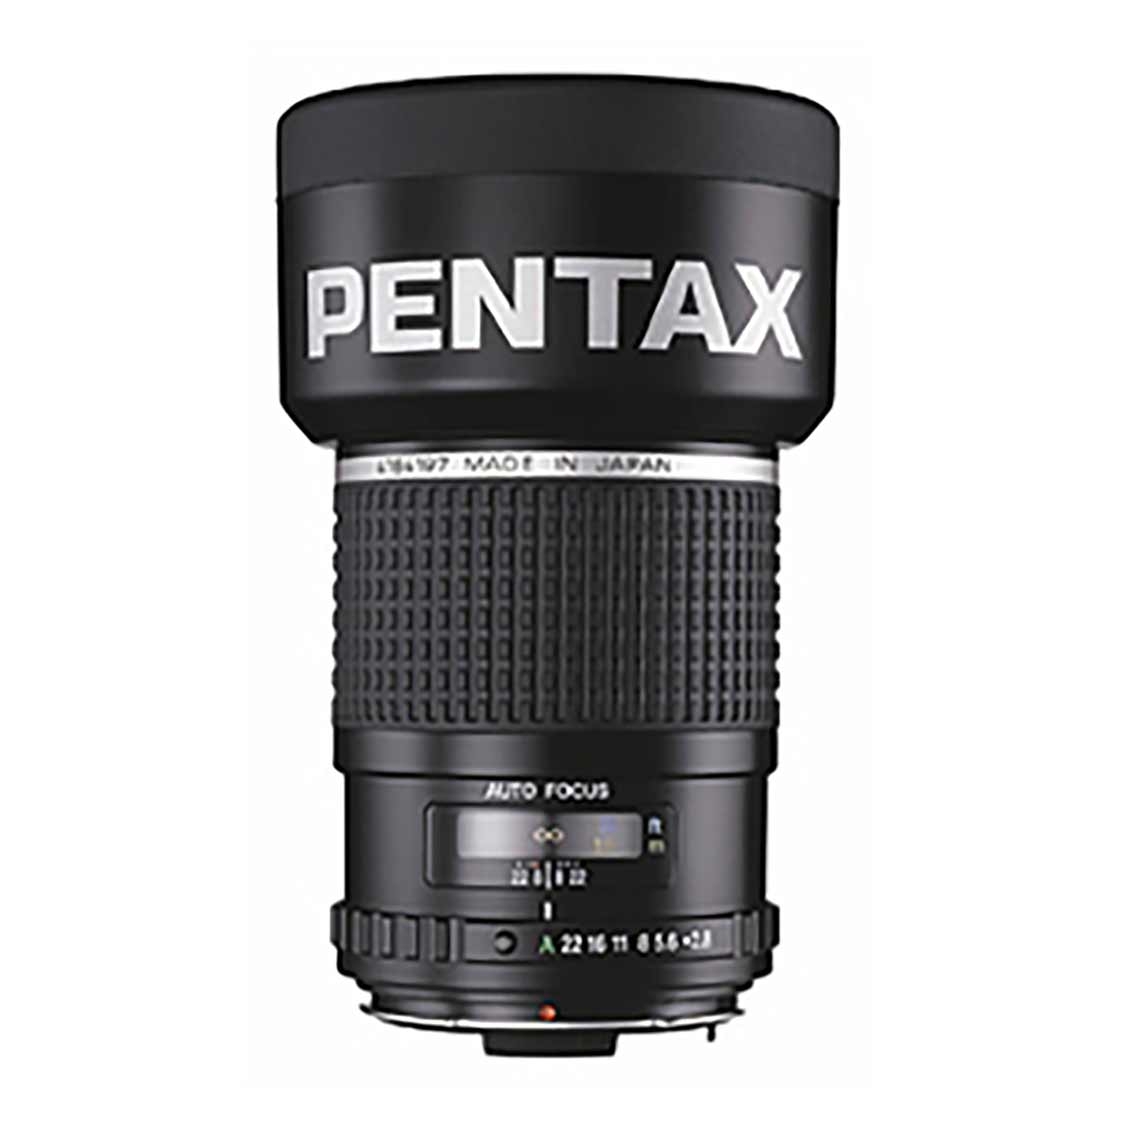 Pentax P-645 AF 150mm F2.8 IF Lens